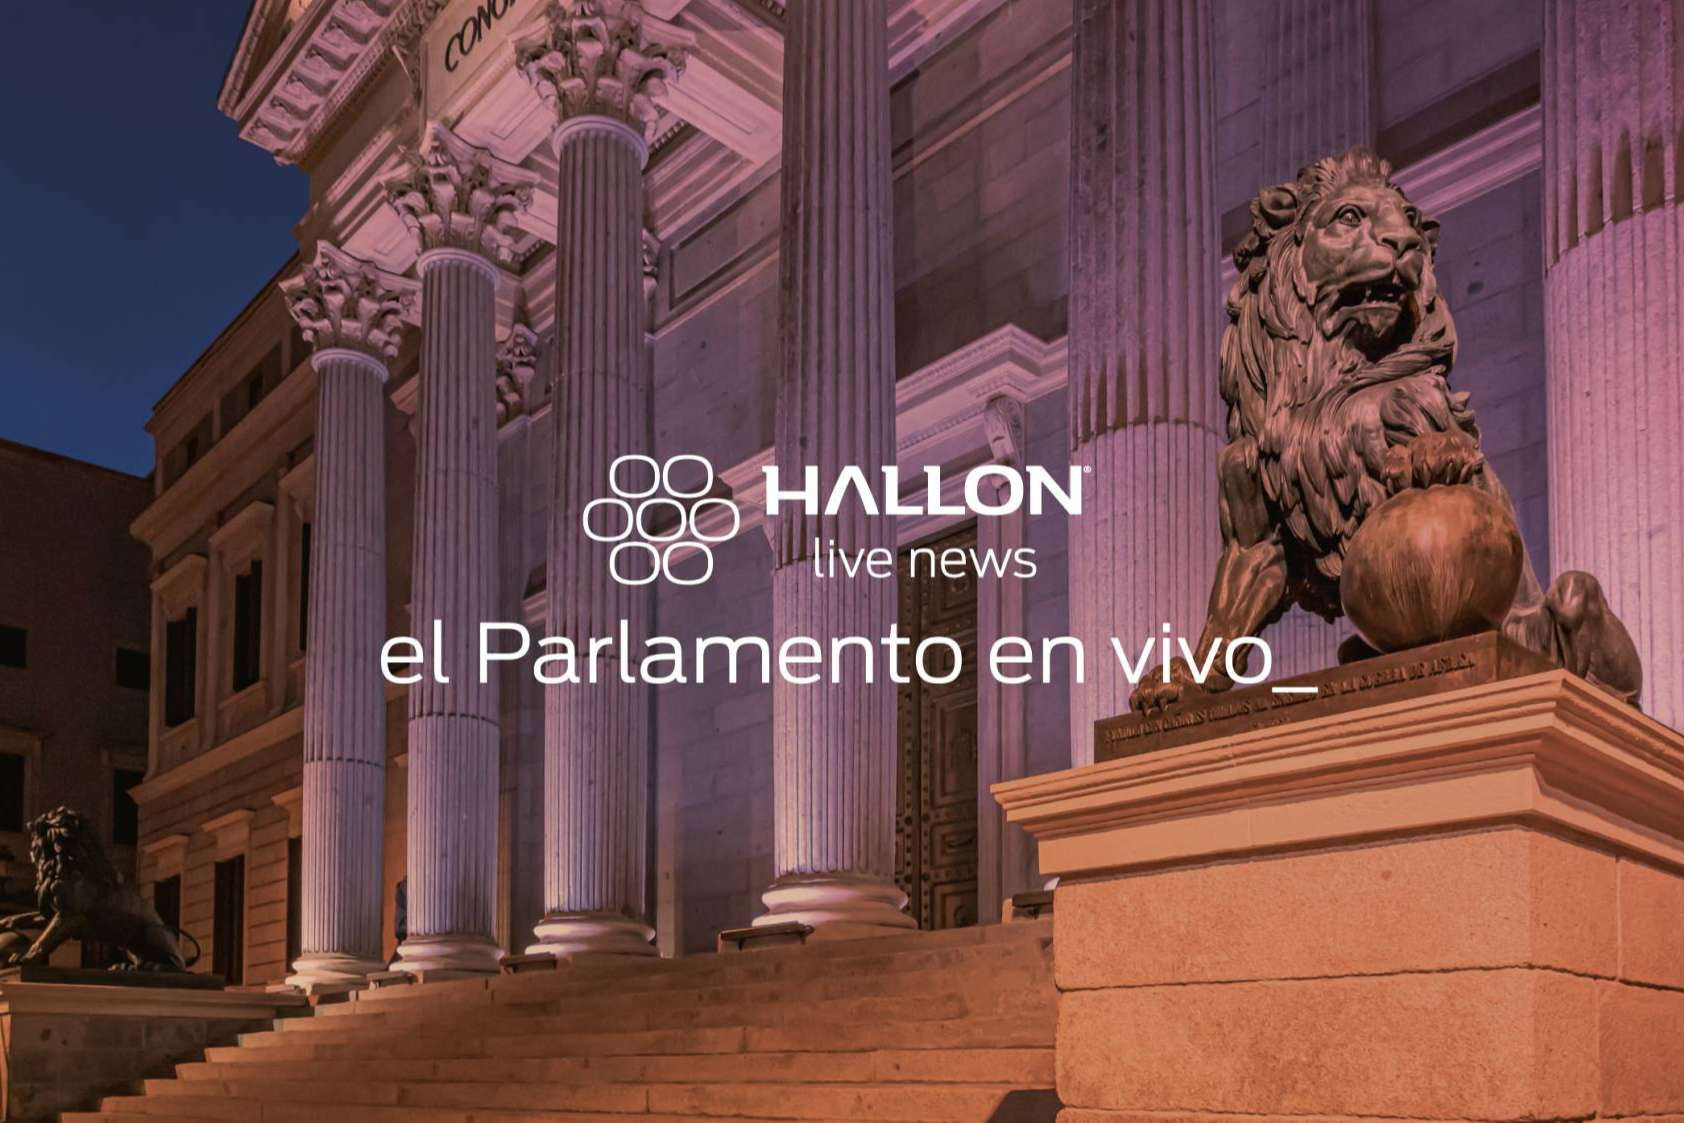  Hallon Live News Parlamento trae una interesante actividad legislativa, en vivo, al Whatsapp 